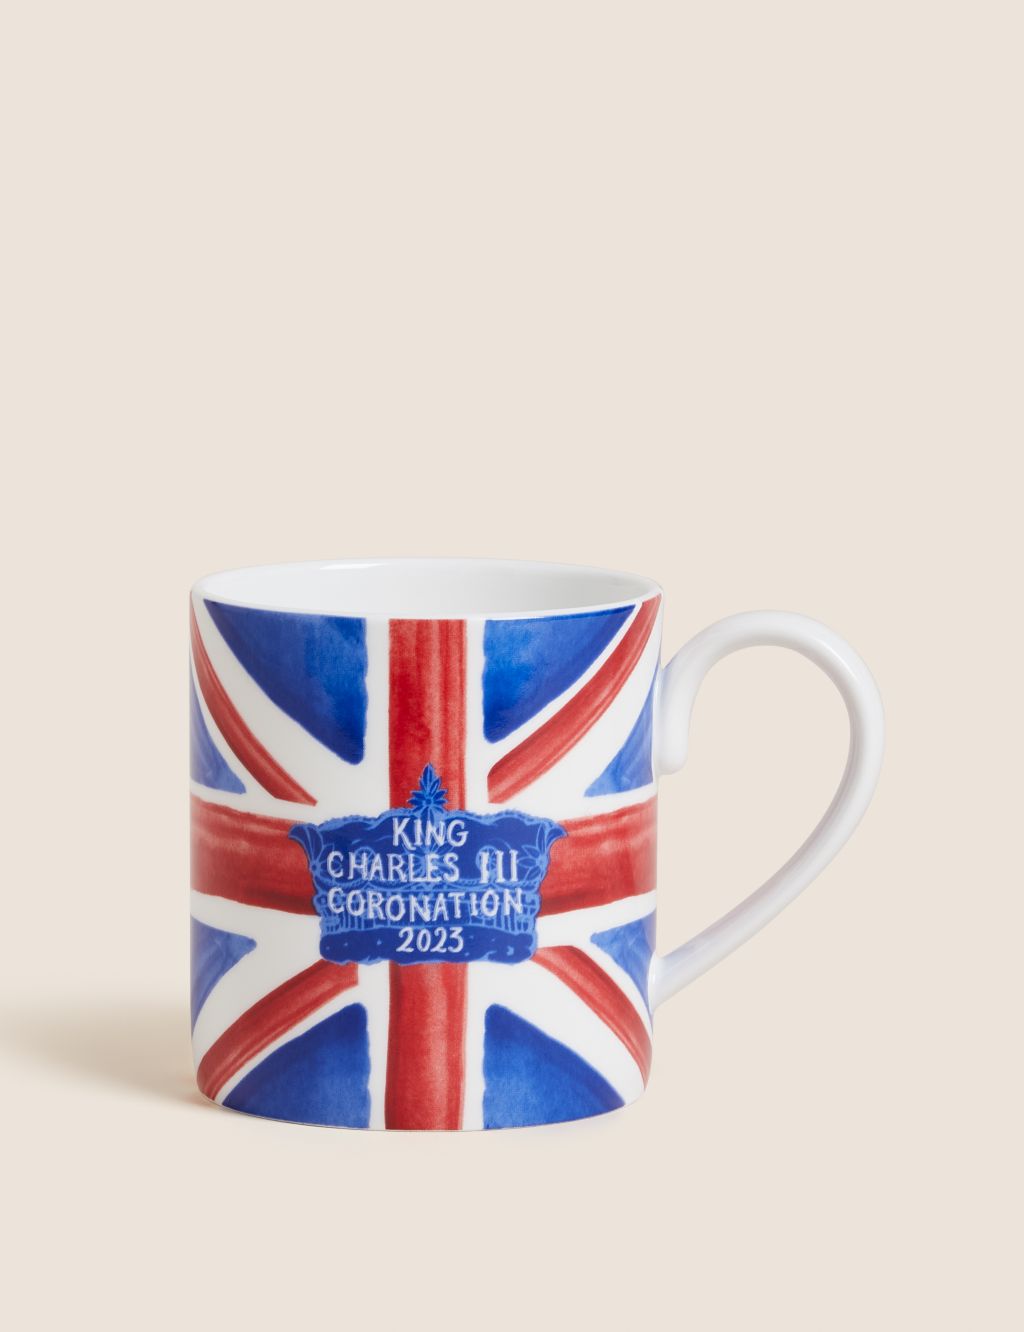 Coronation Union Jack Mug image 1